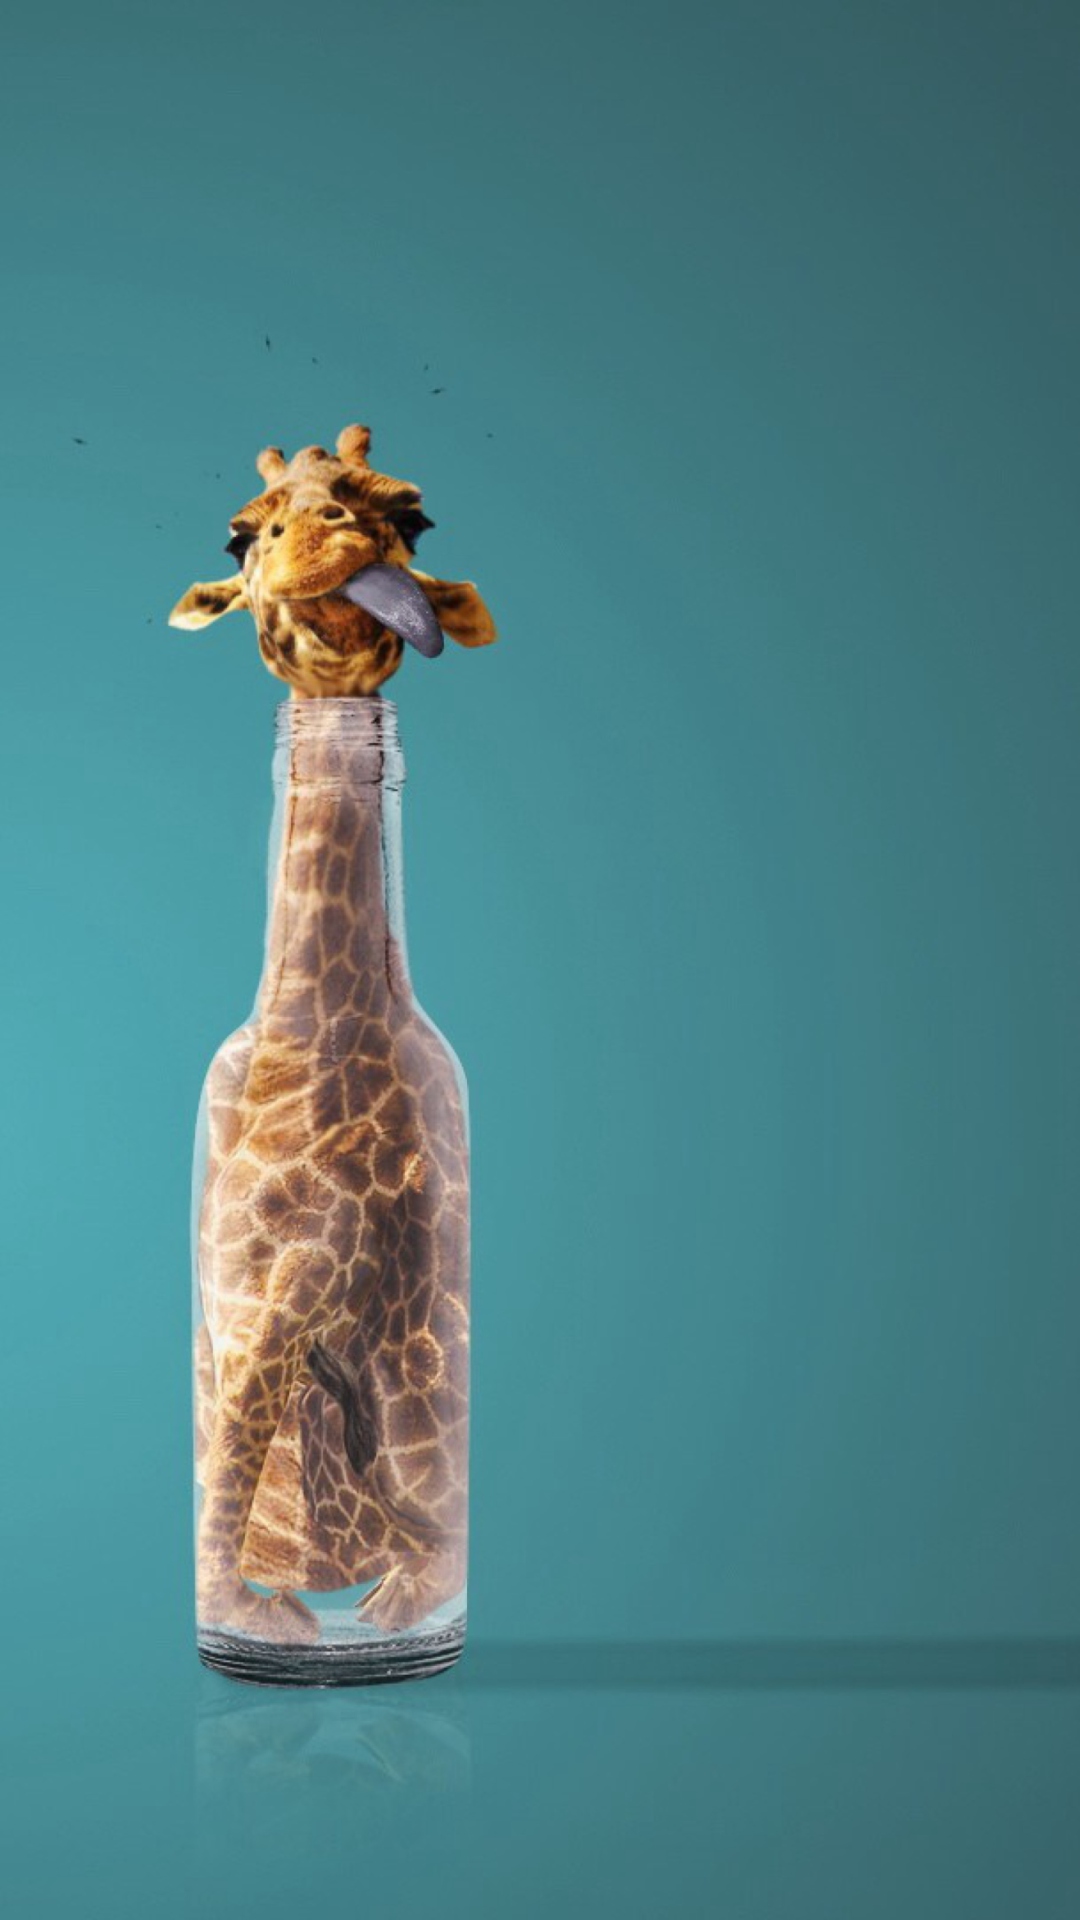 Giraffe In Bottle wallpaper 1080x1920